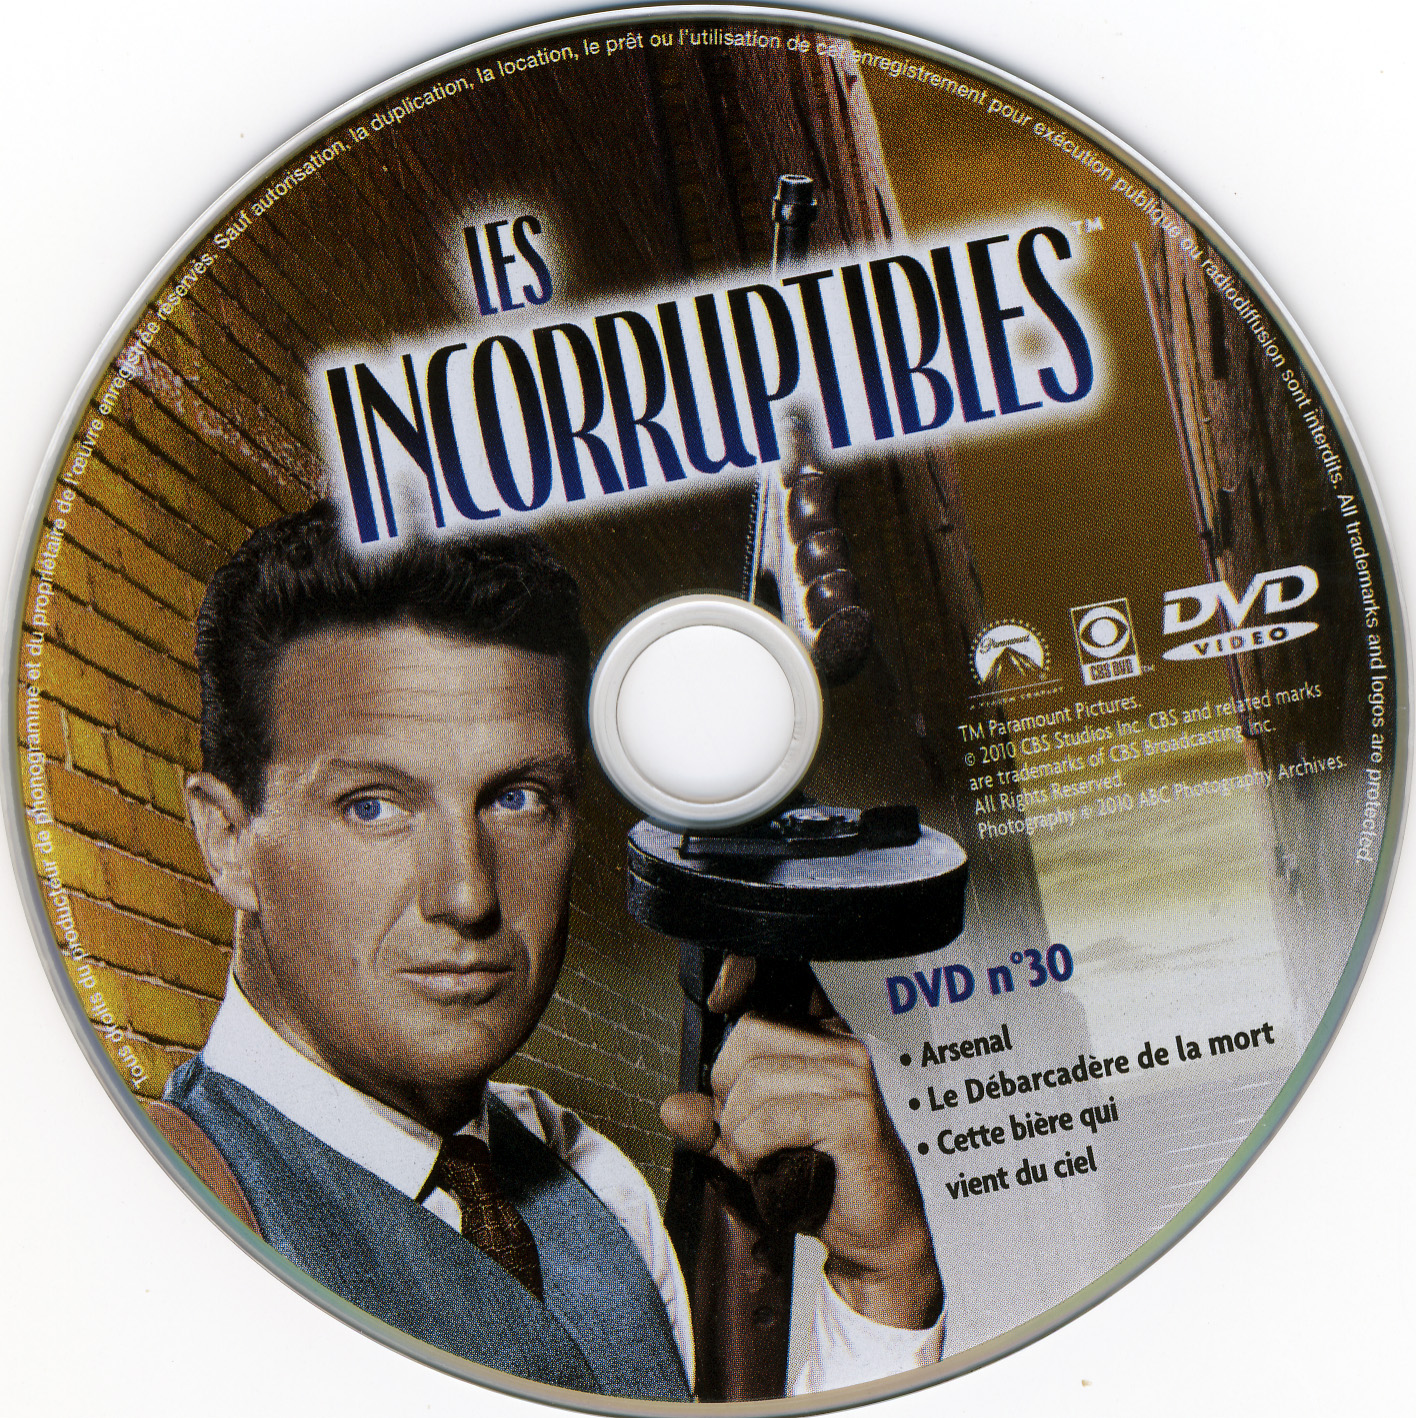 Les incorruptibles intgrale DVD 30